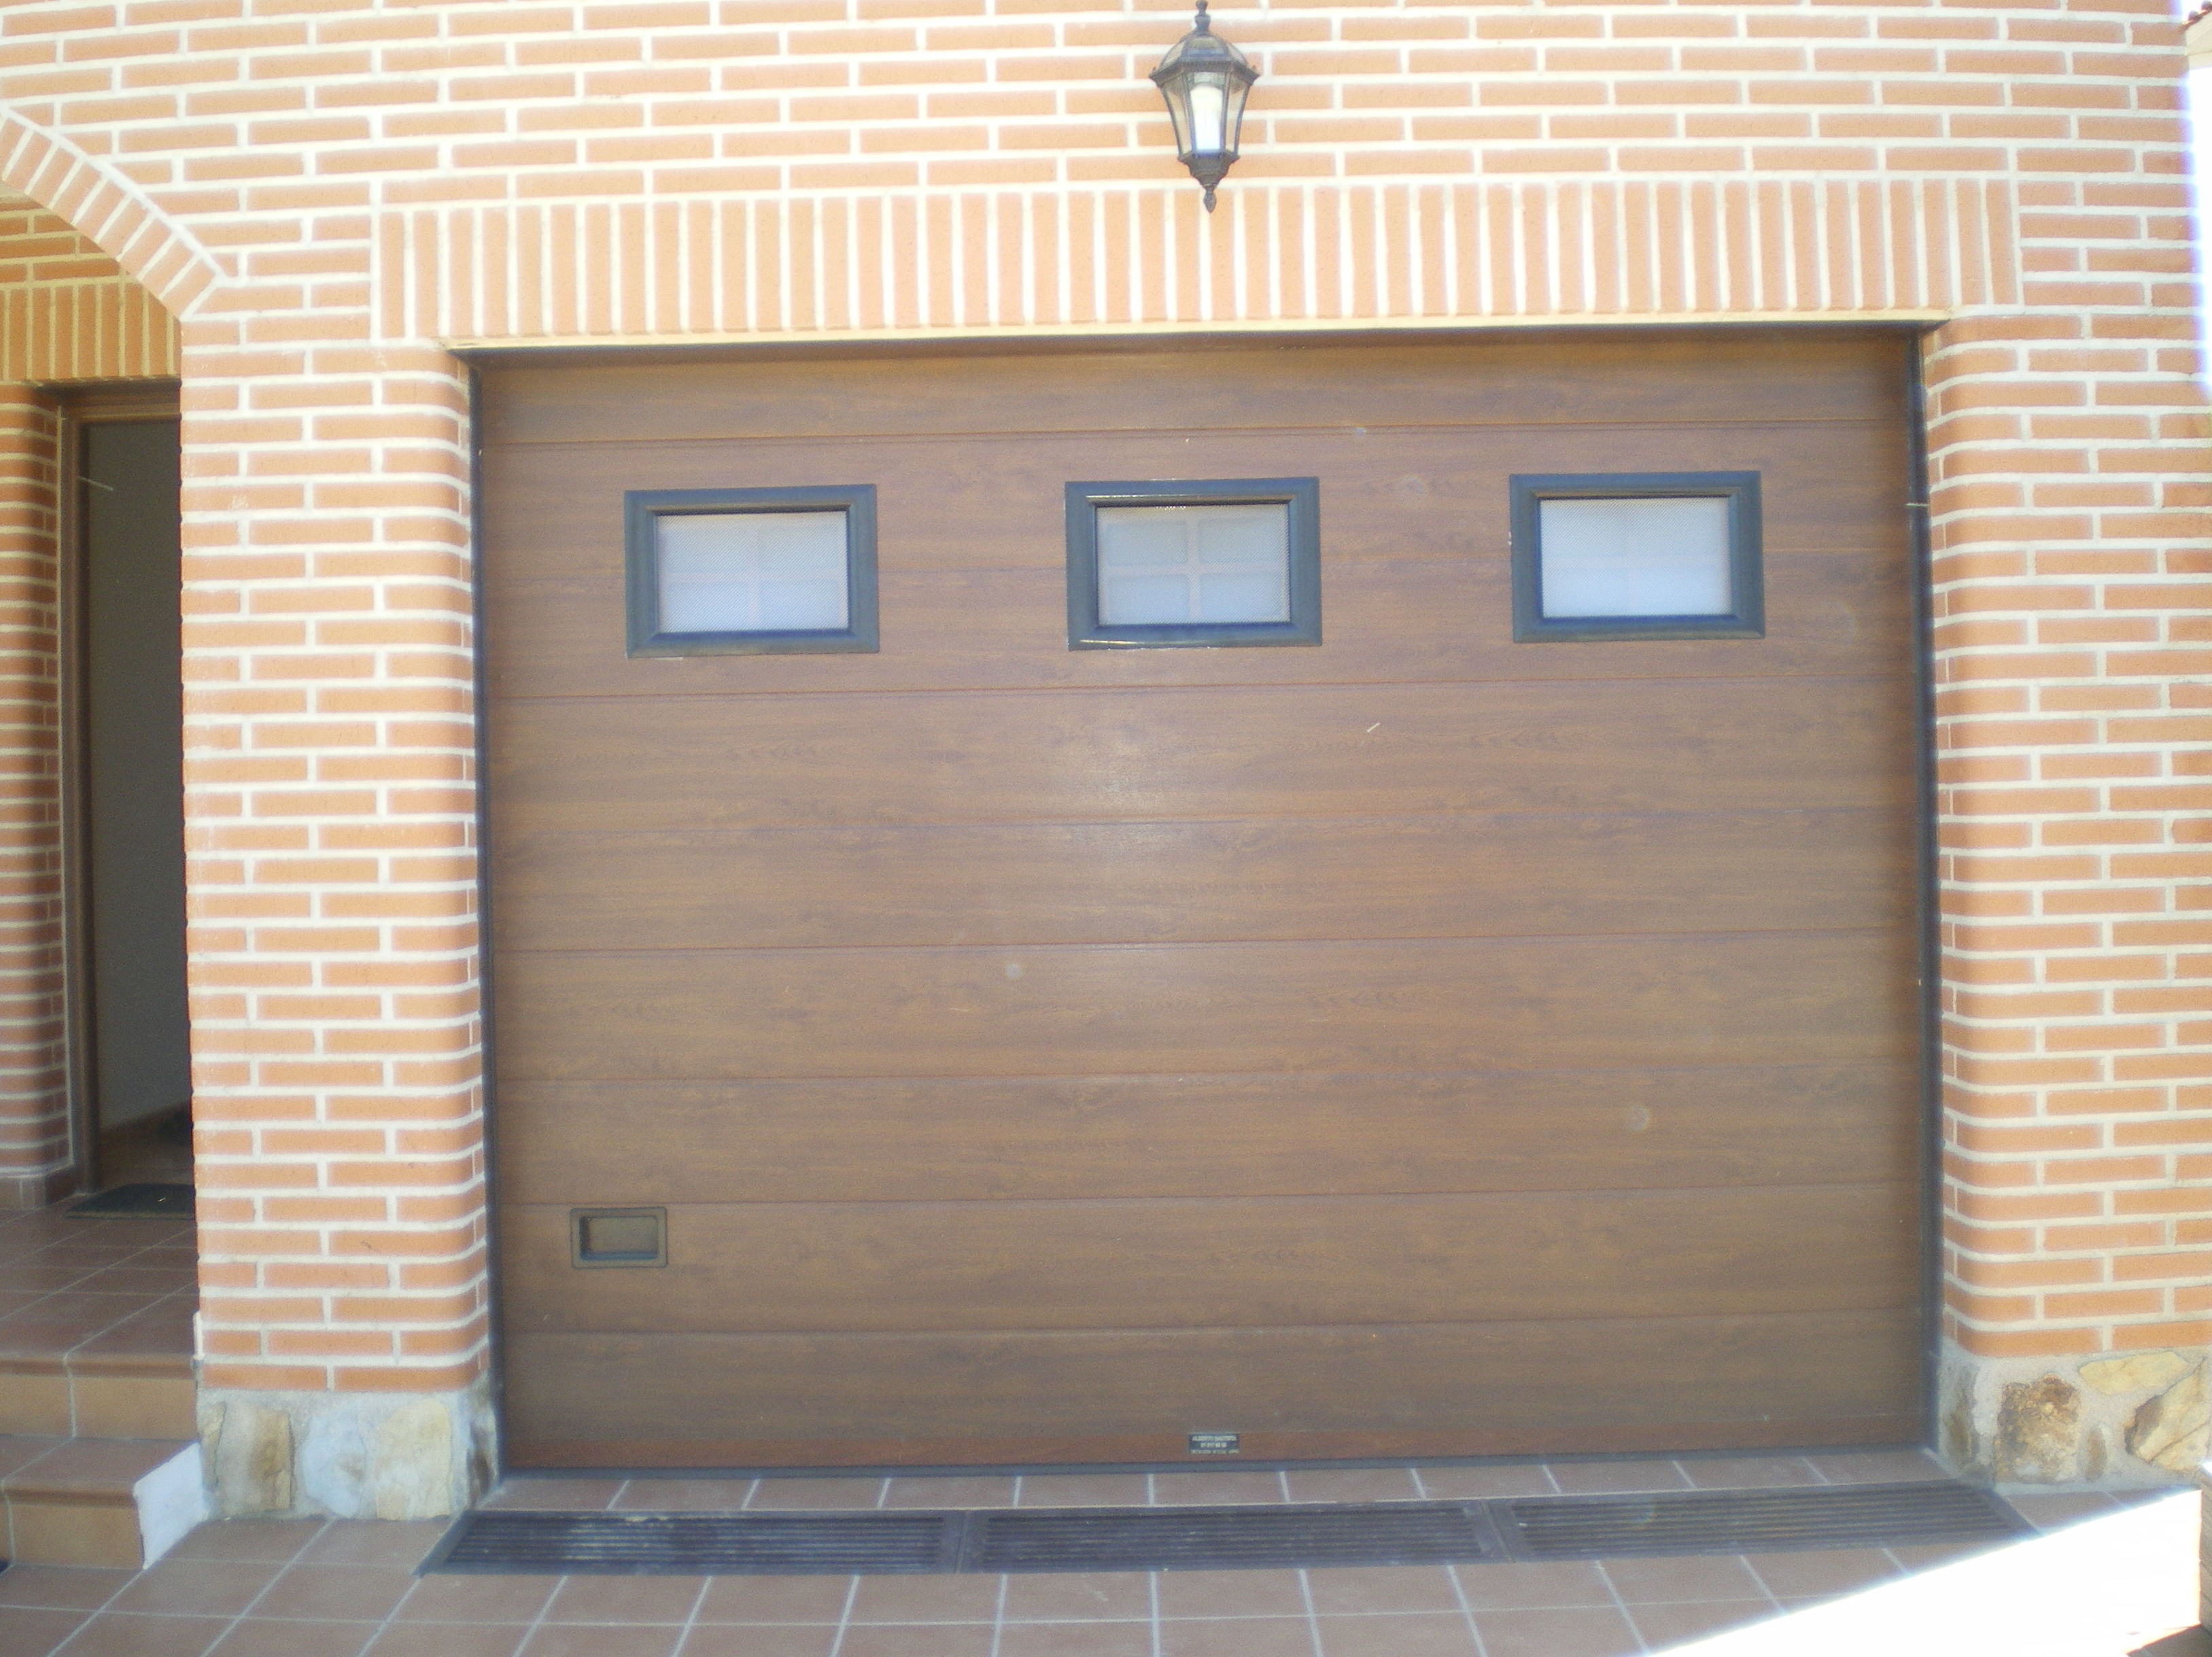 Puerta seccional color madera, con ventanas.